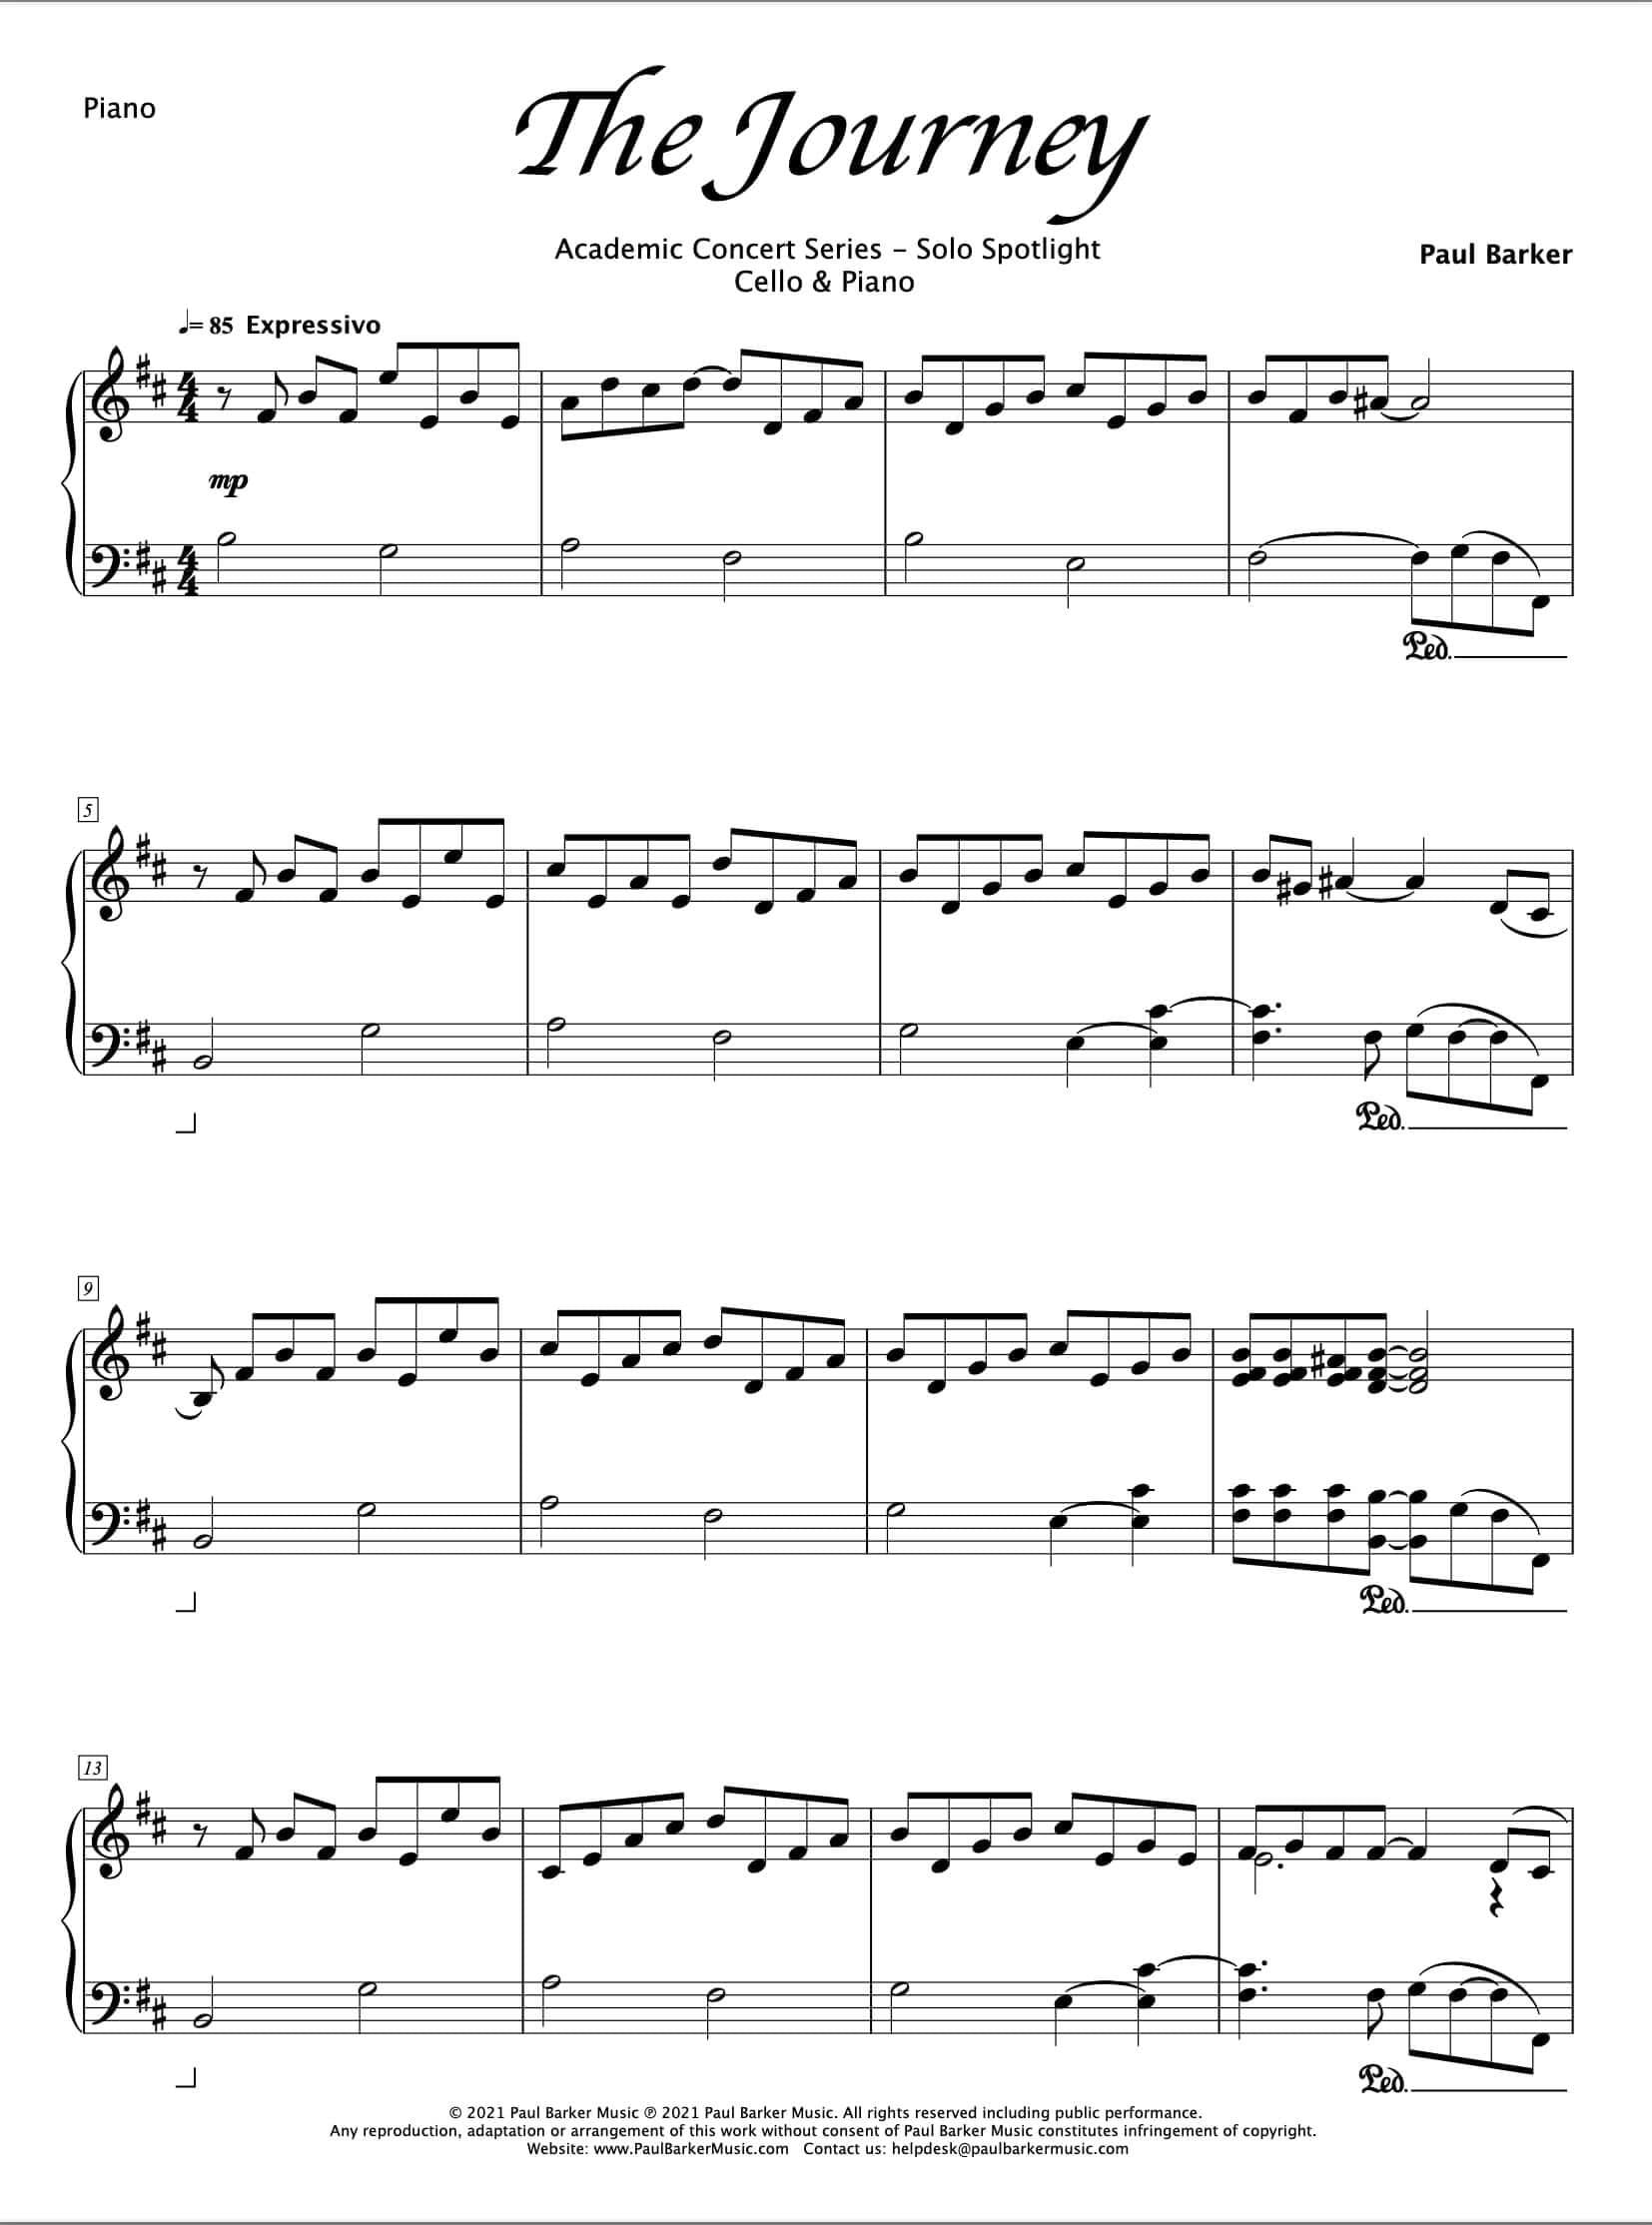 The Journey [Cello & Piano] - Paul Barker Music 